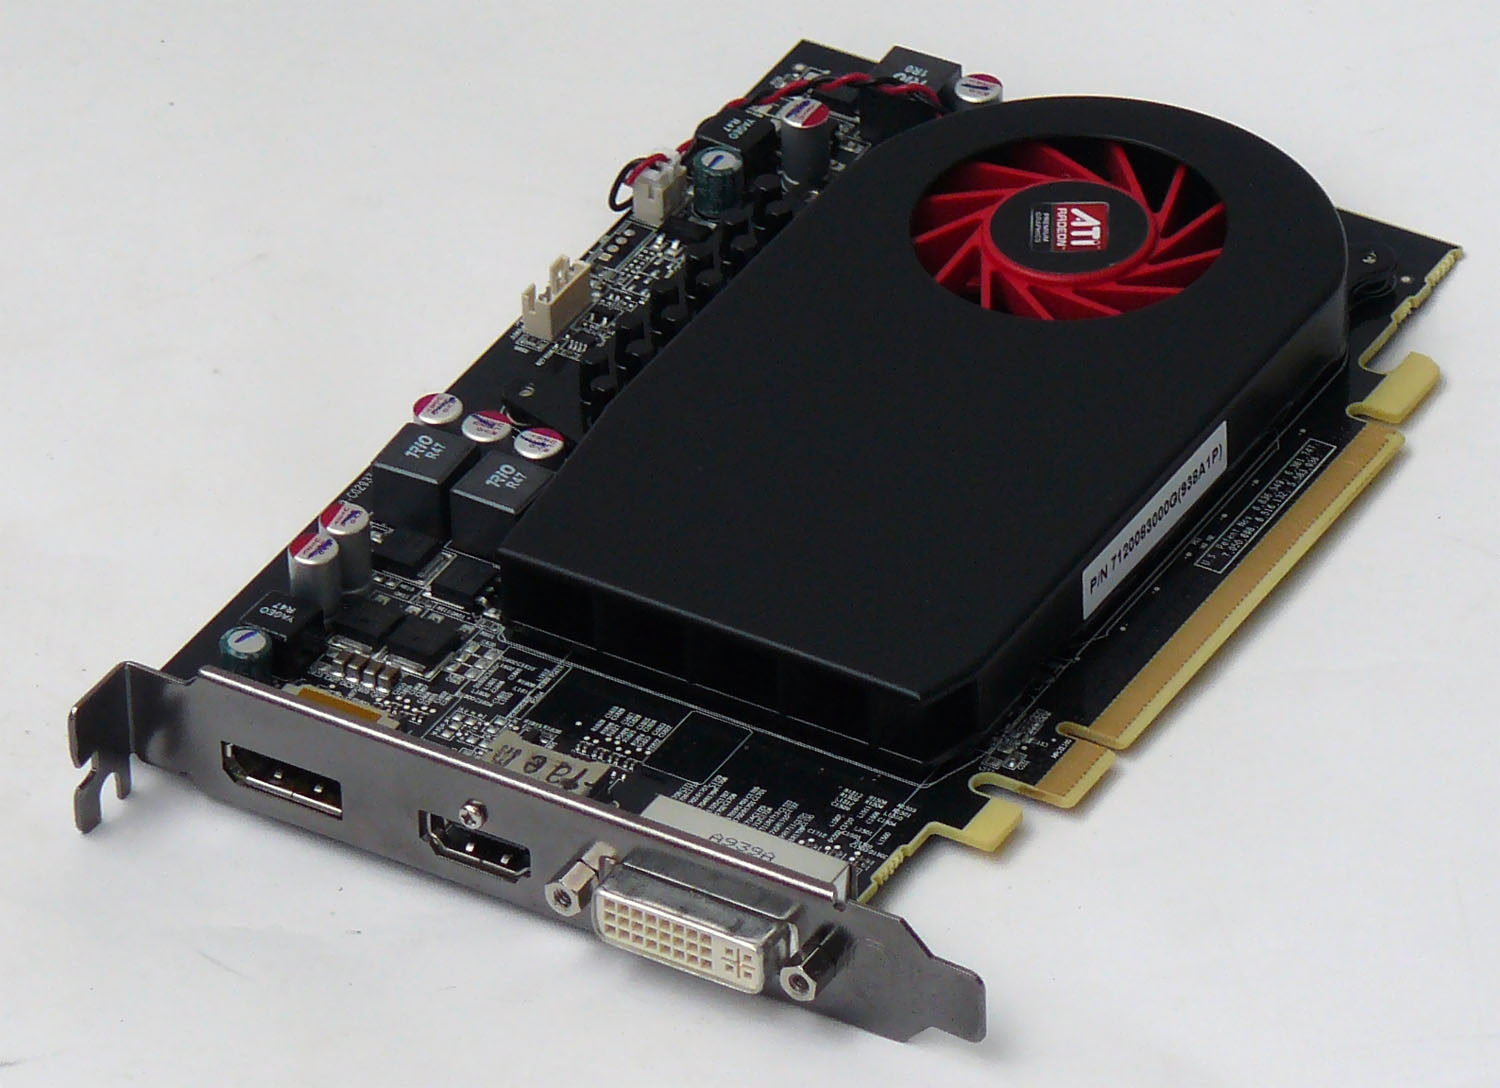  ATI Radeon HD 5670, verze PowerColor (pro zvětšení klikněte)